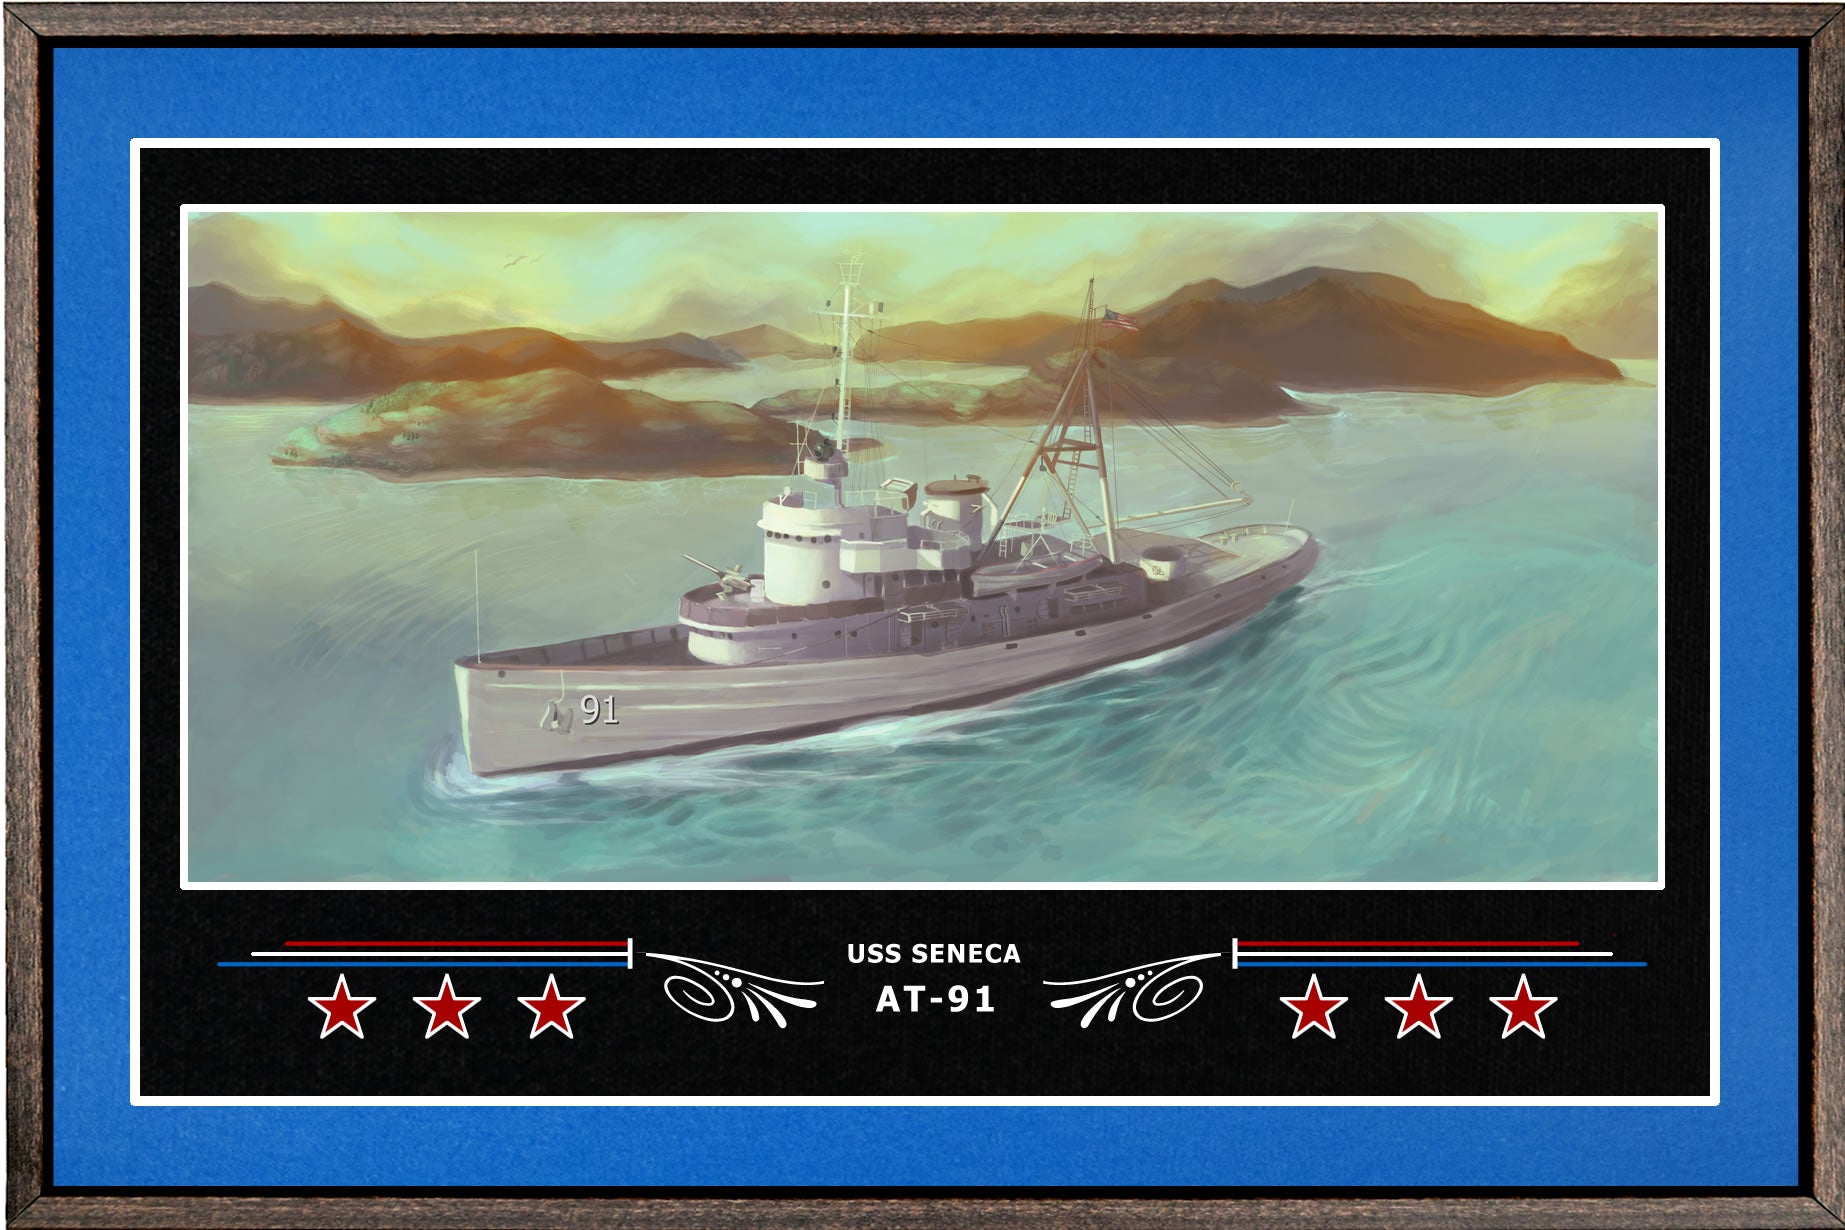 USS SENECA AT 91 BOX FRAMED CANVAS ART BLUE